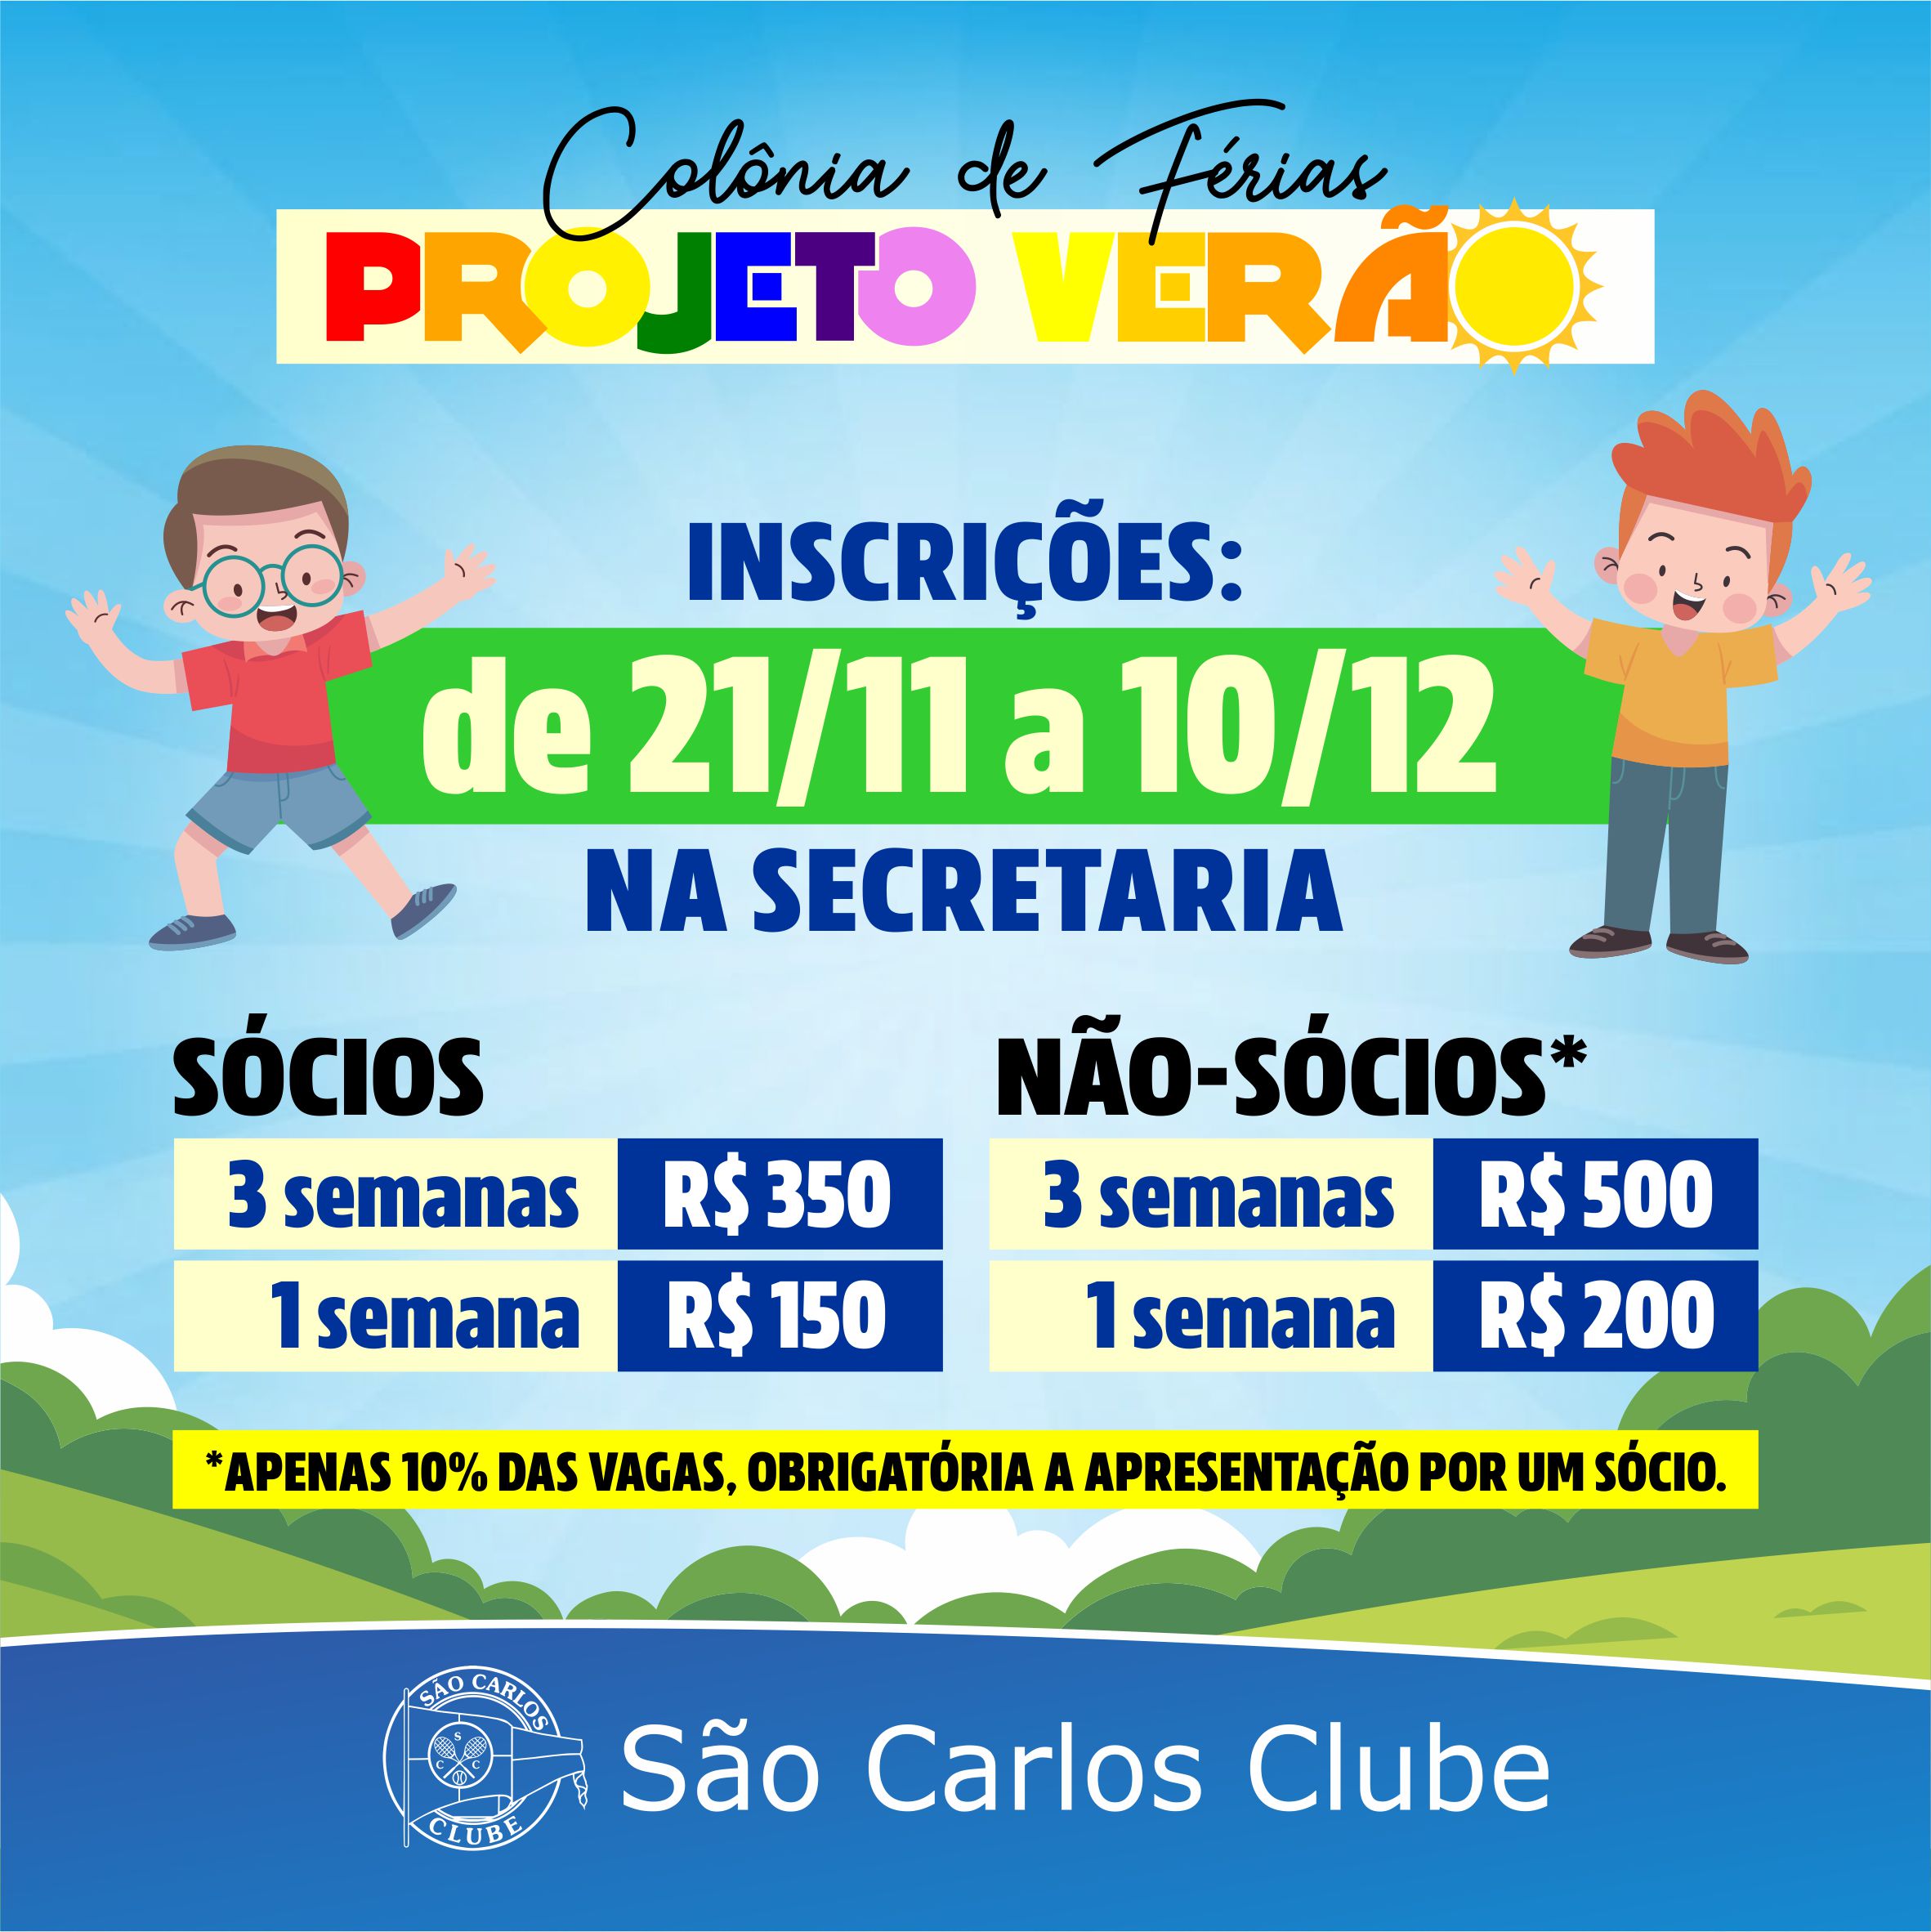 São Carlos Clube - Montagem da Festa Junina altera acesso ao clube a partir  do dia 23